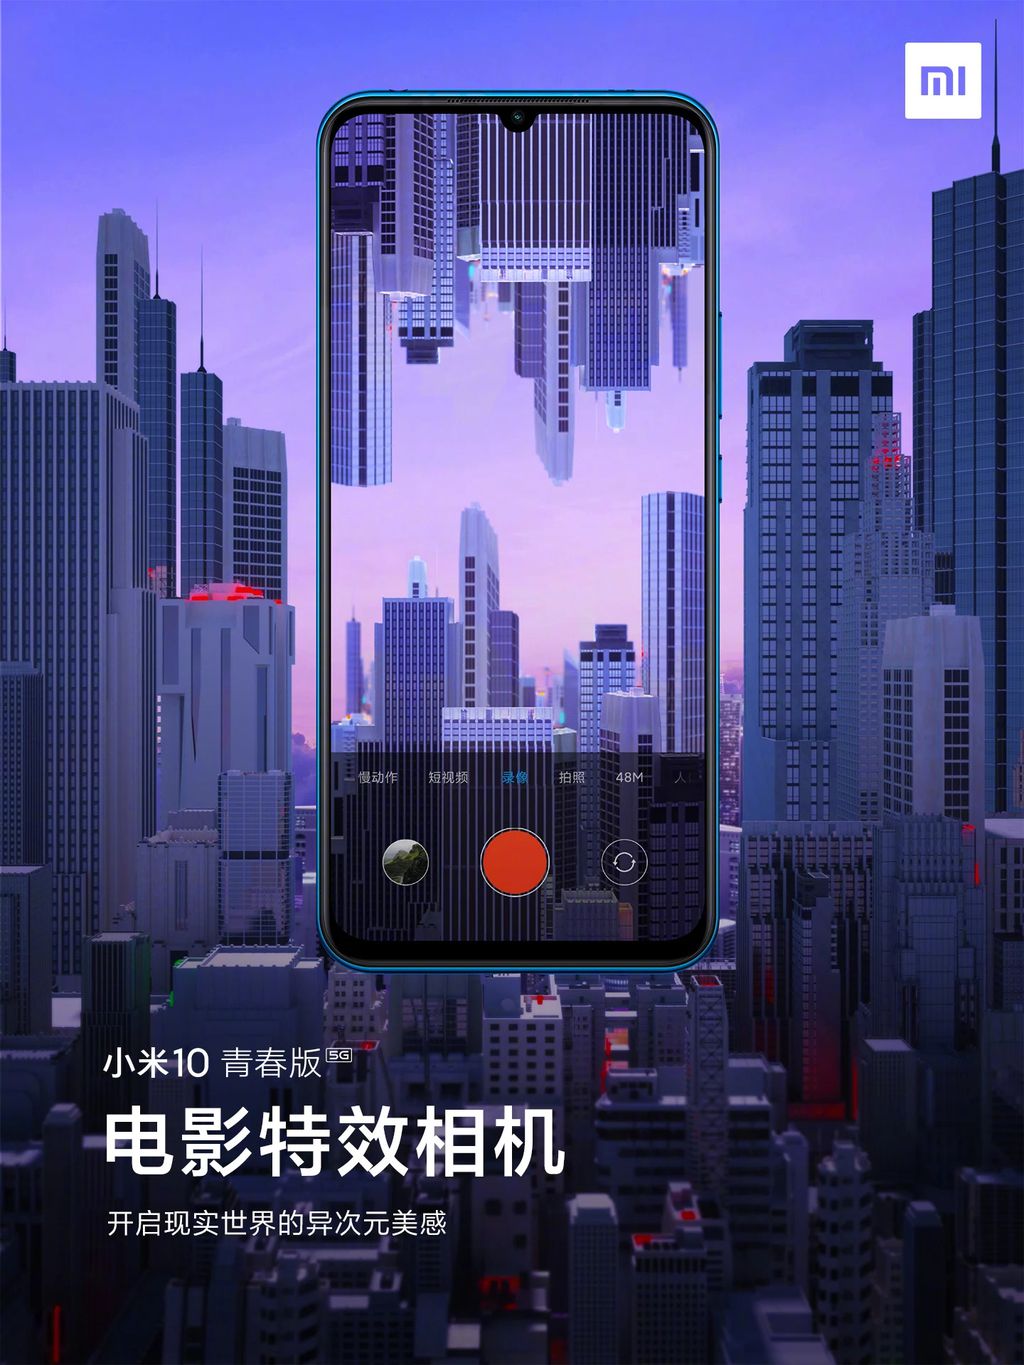 Efeitos animados serão possíveis na câmera do Mi 10 (Foto: Reprodução/Xiaomi)